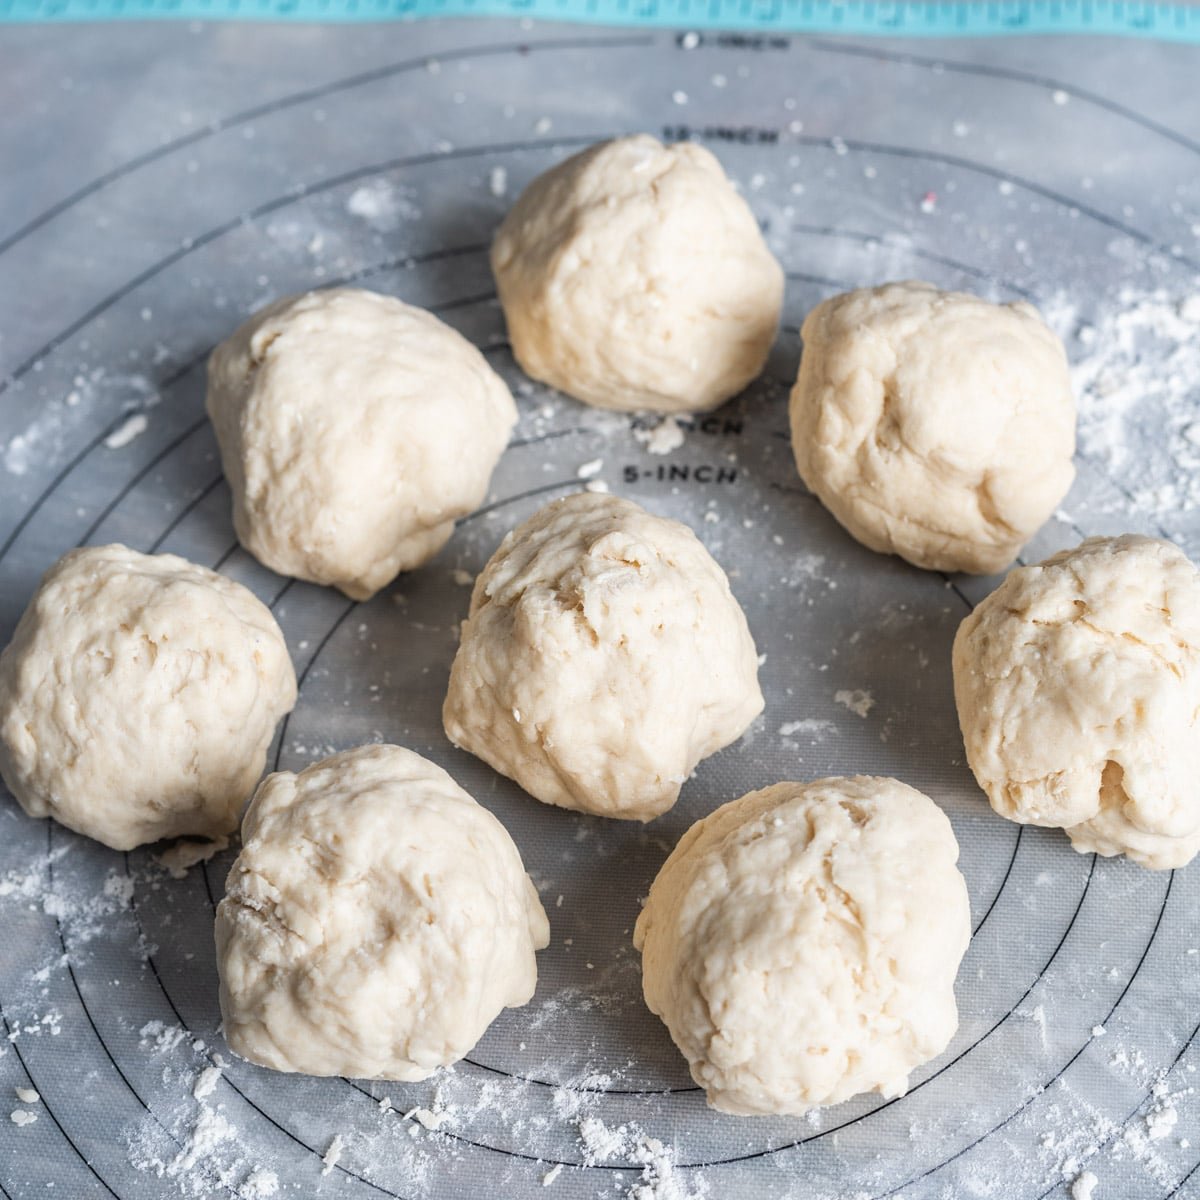 8 balls of homemade tortilla dough